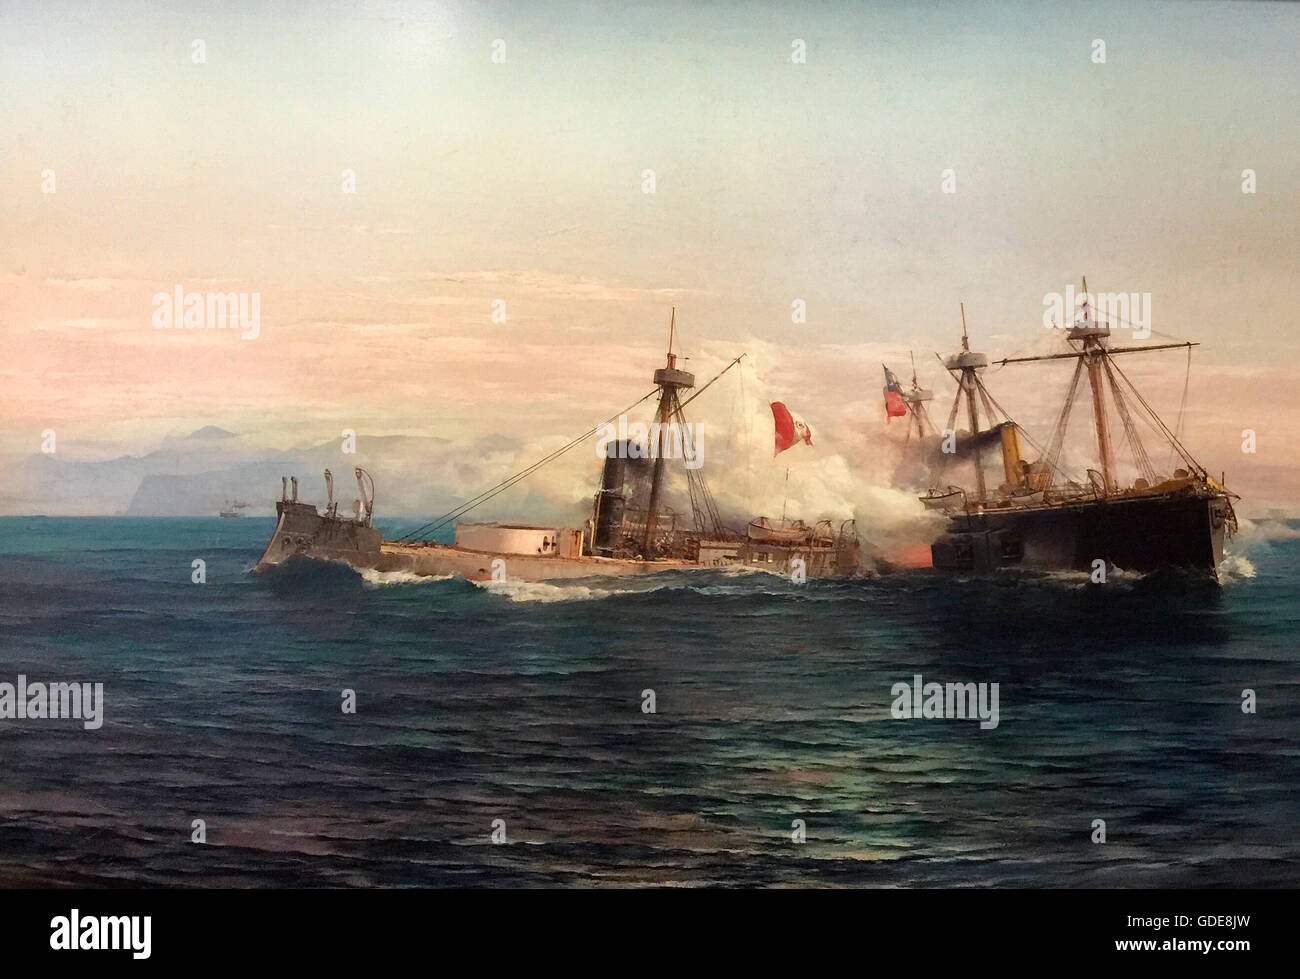 La bataille de Angamos (Espagnol : Combate de Angamos) était une rencontre navale de la guerre du Pacifique se sont battus entre les marines du Chili et Pérou à Punta Angamos, le 8 octobre, 1879. Banque D'Images